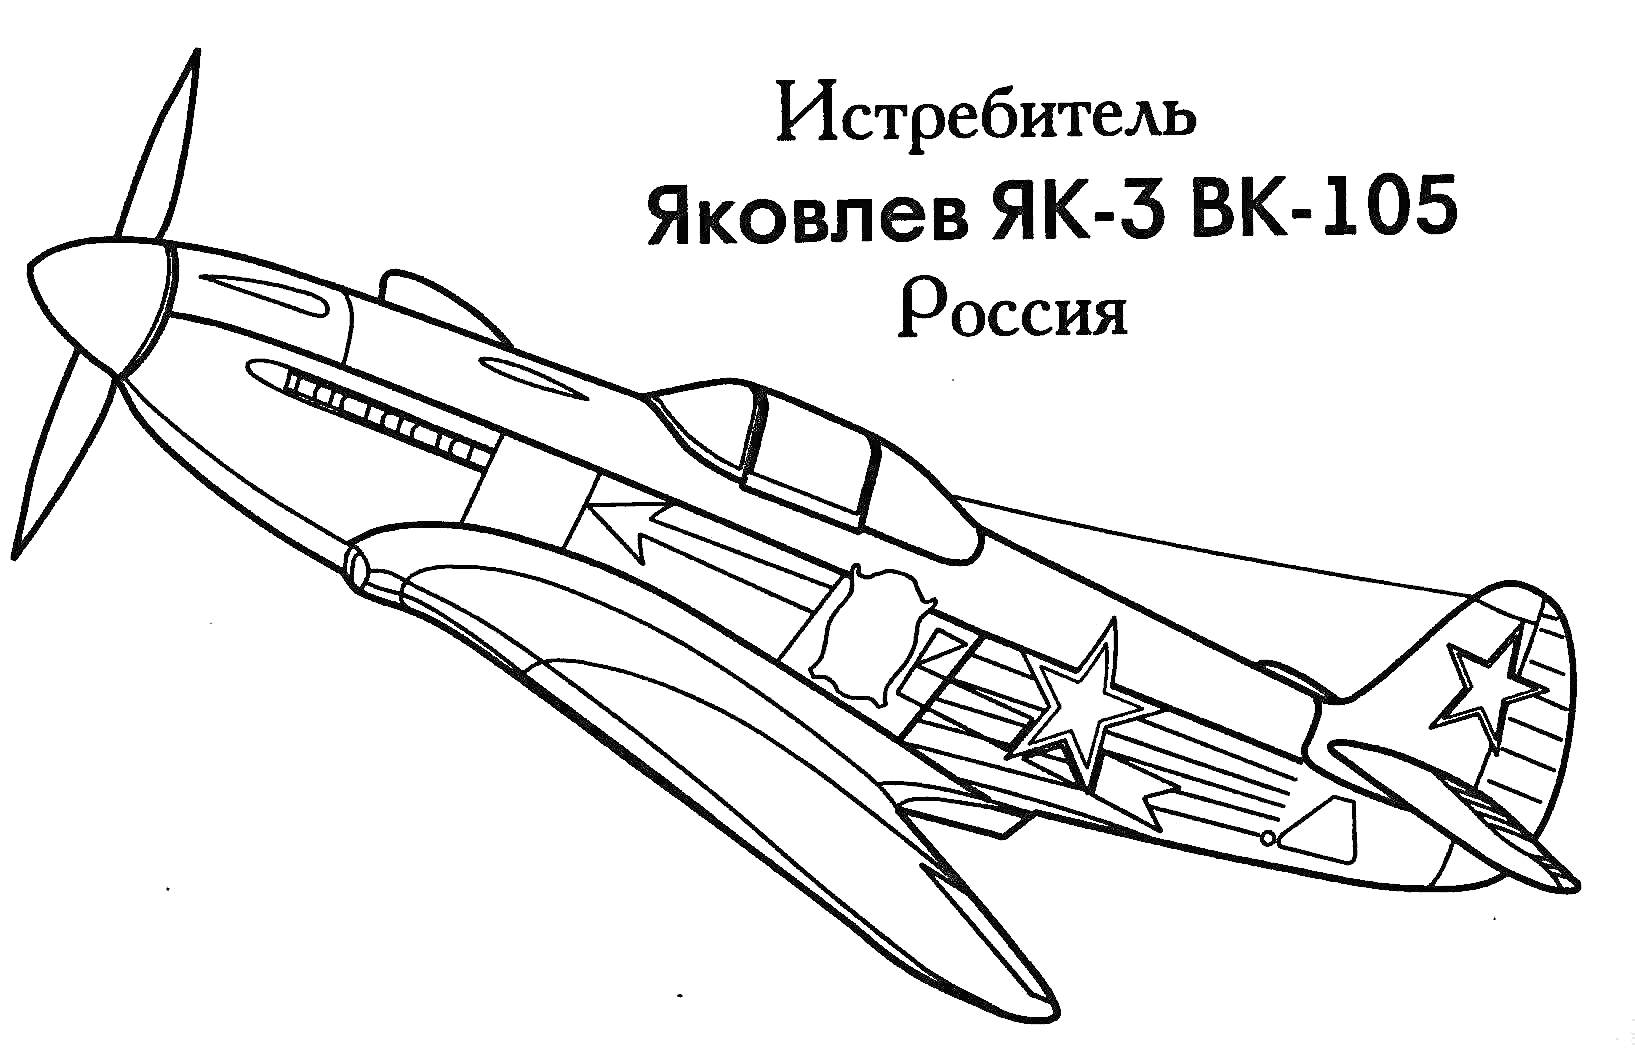 Истребитель Як-3 с двигателем ВК-105, Россия, со звездами на крыльях и фюзеляже